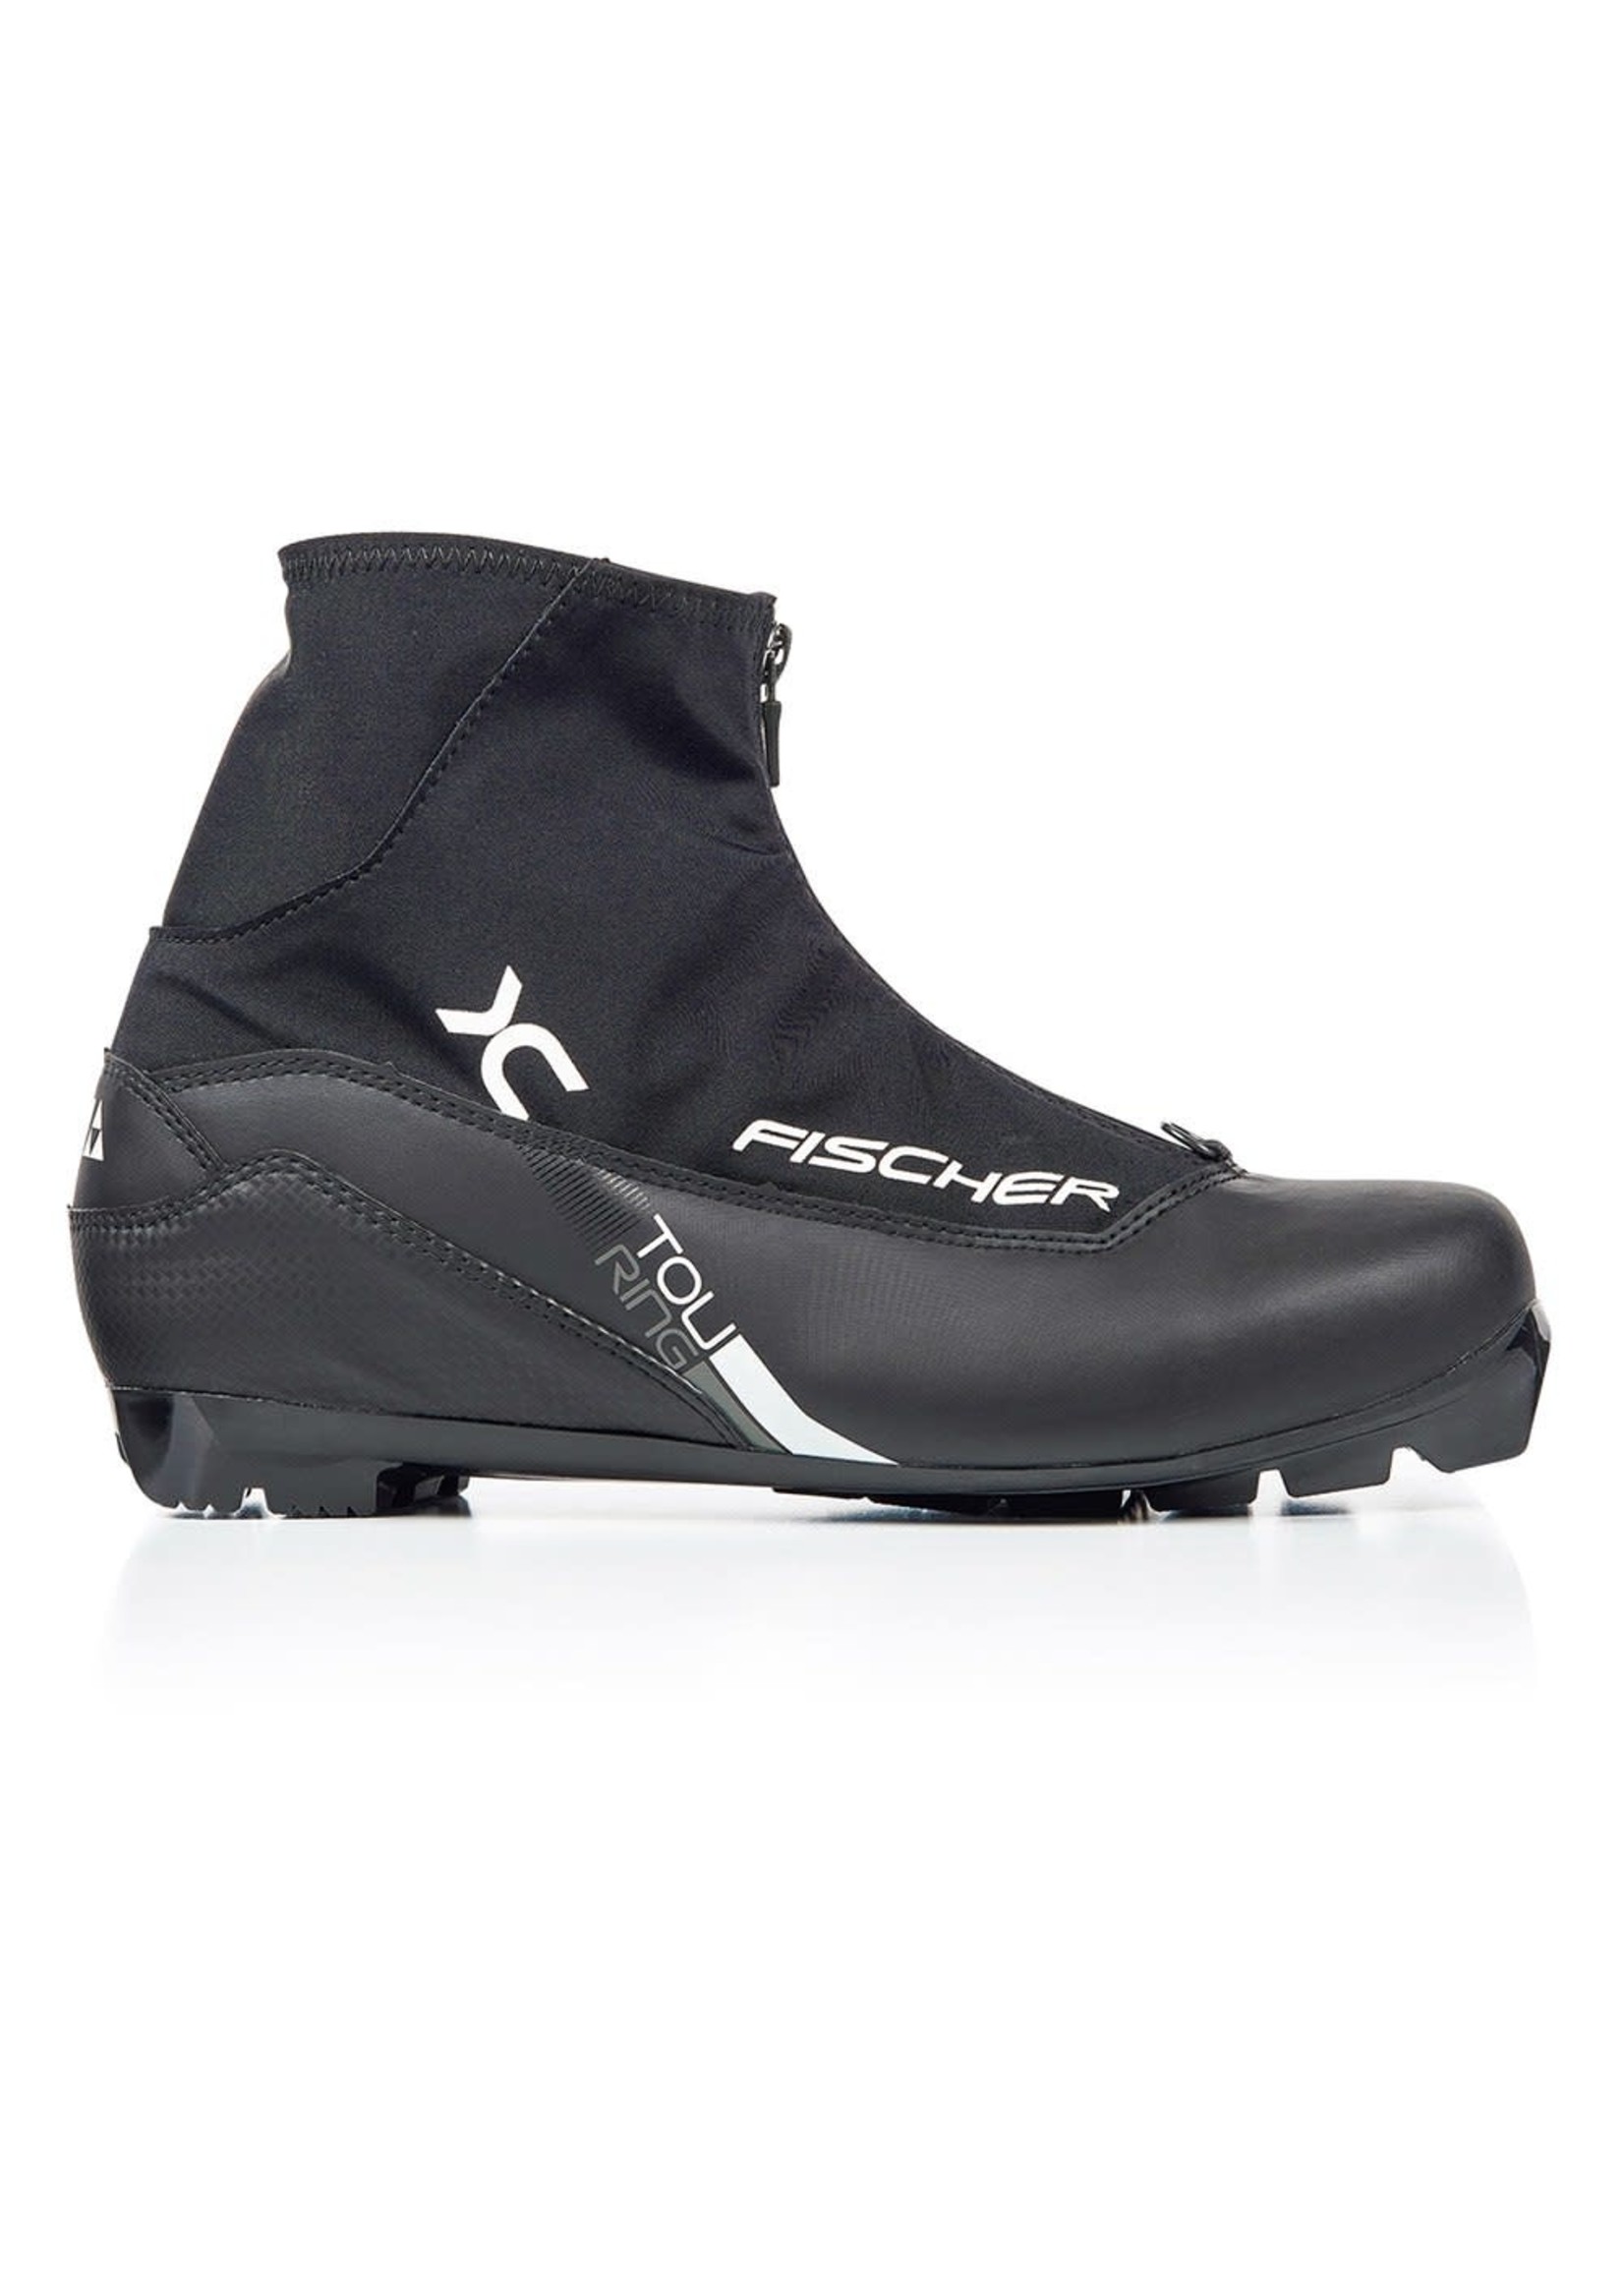 Fischer Fischer XC  Nordic Touring Ski Boots